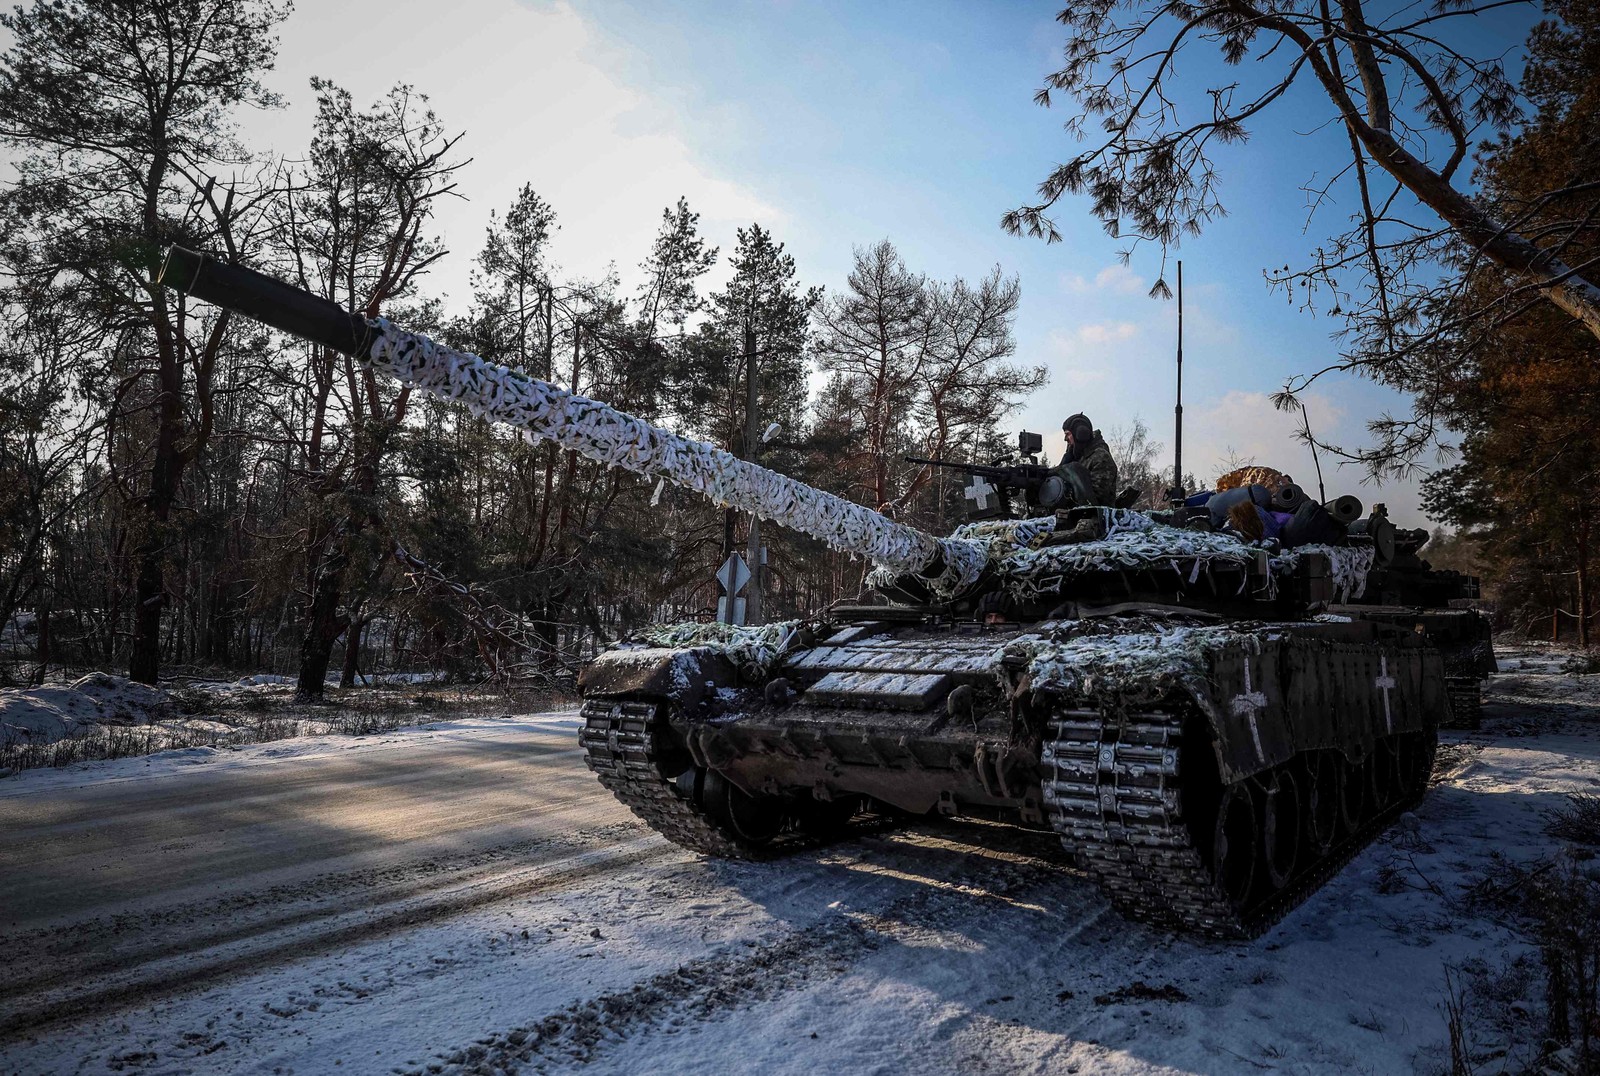 Soldados ucranianos preparam tanque para operação na região de Donetsk em meio à invasão militar da Rússia na Ucrânia — Foto: Anatolii Stepanov/AFP